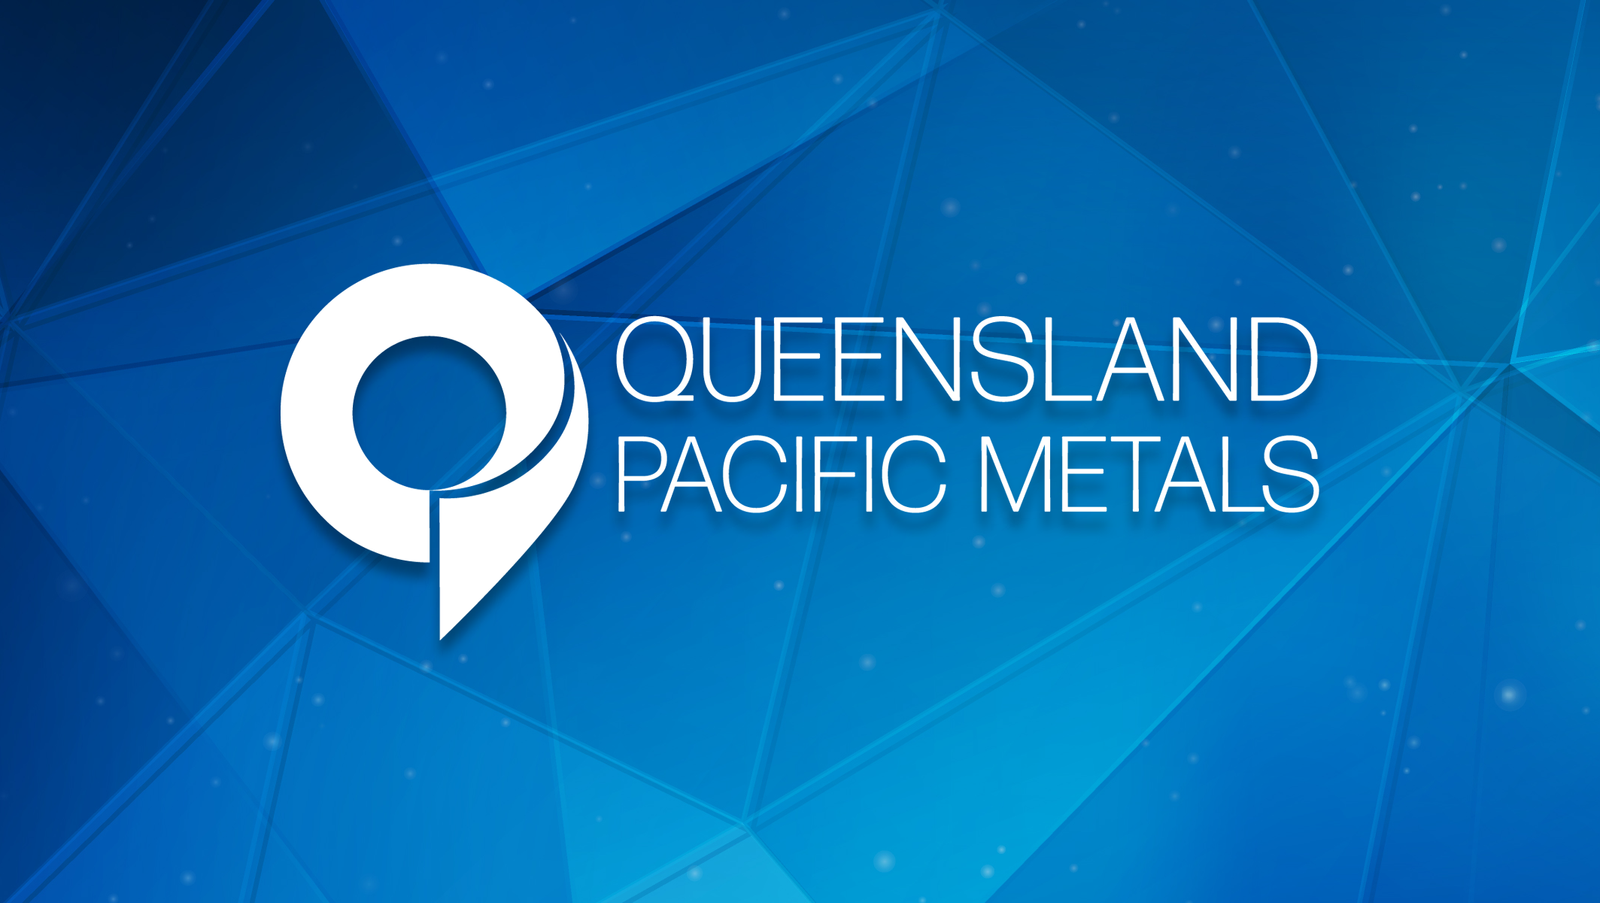 Queensland Pacific Metals to sponsor historic tour